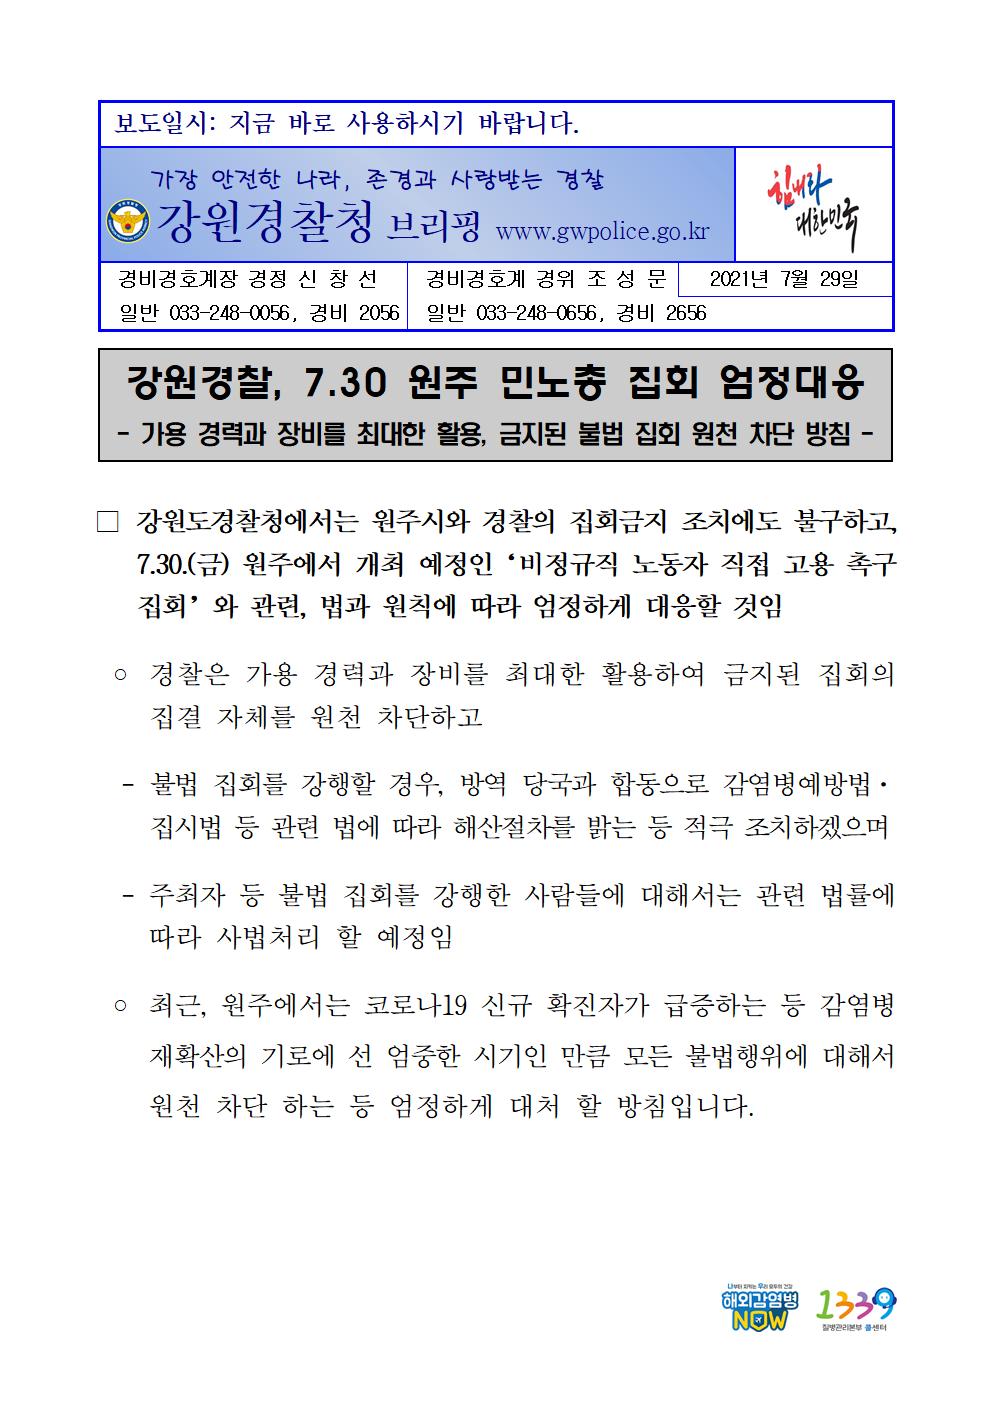 강원경찰, 30일 원주 민노총 집회 엄정대응 -0730 언론보도 자료001